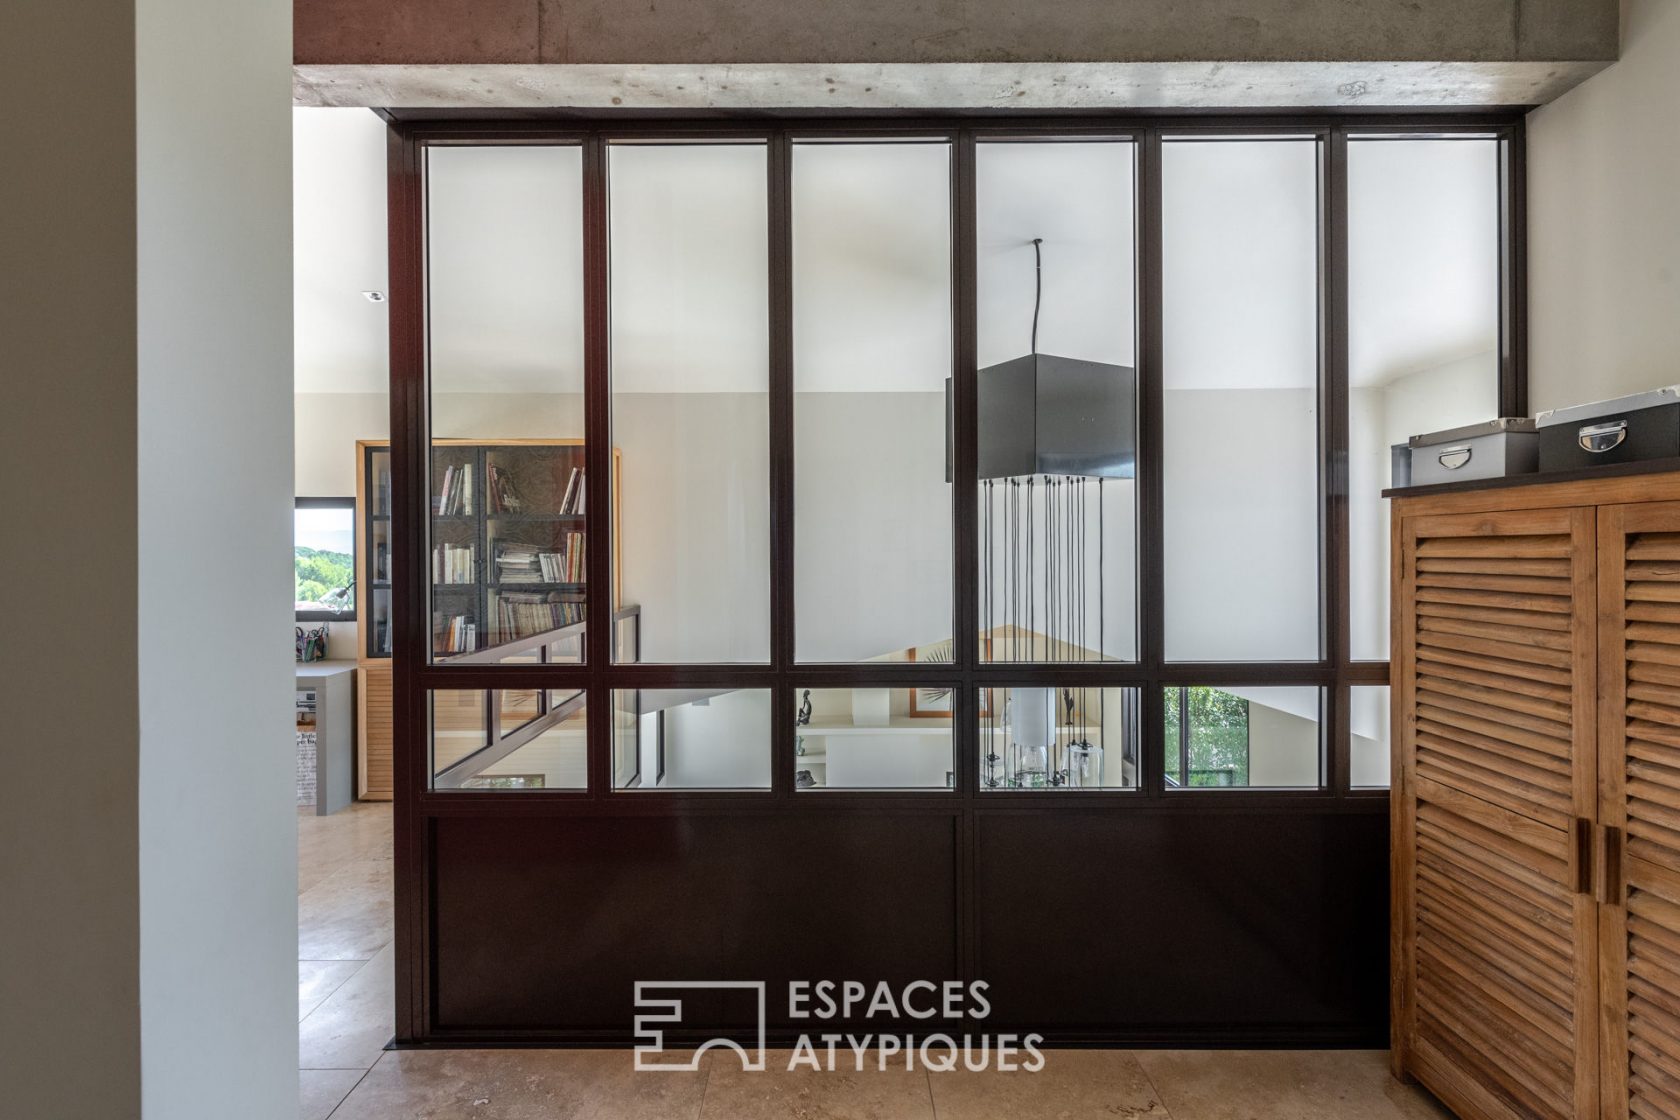 Vente Villa contemporaine aux volumes audacieux à Eguilles - 226 m2 ...